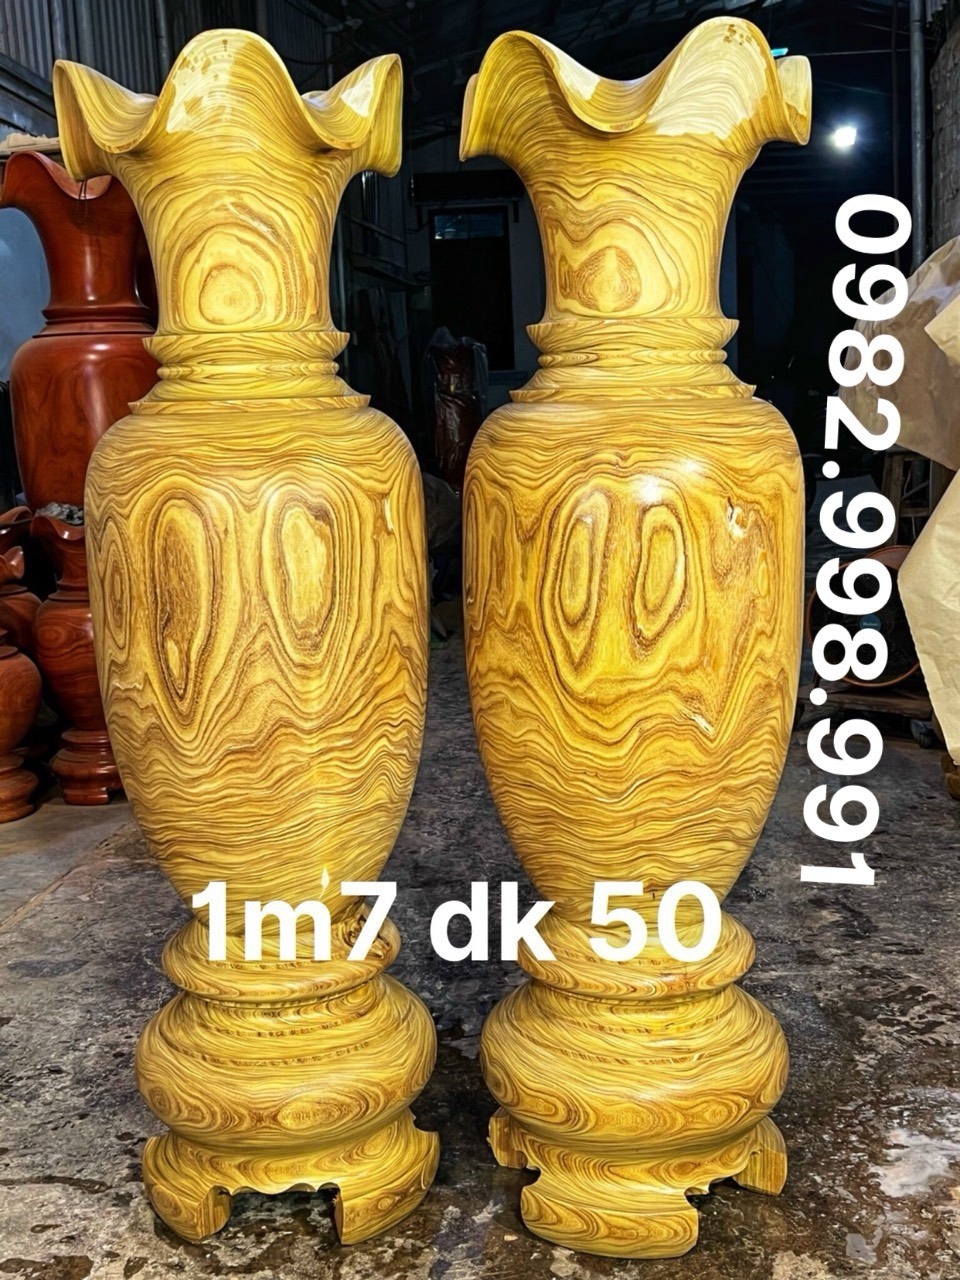 đôi Lộc bình gỗ cẩm vàng cao 1m67 đường kính 50